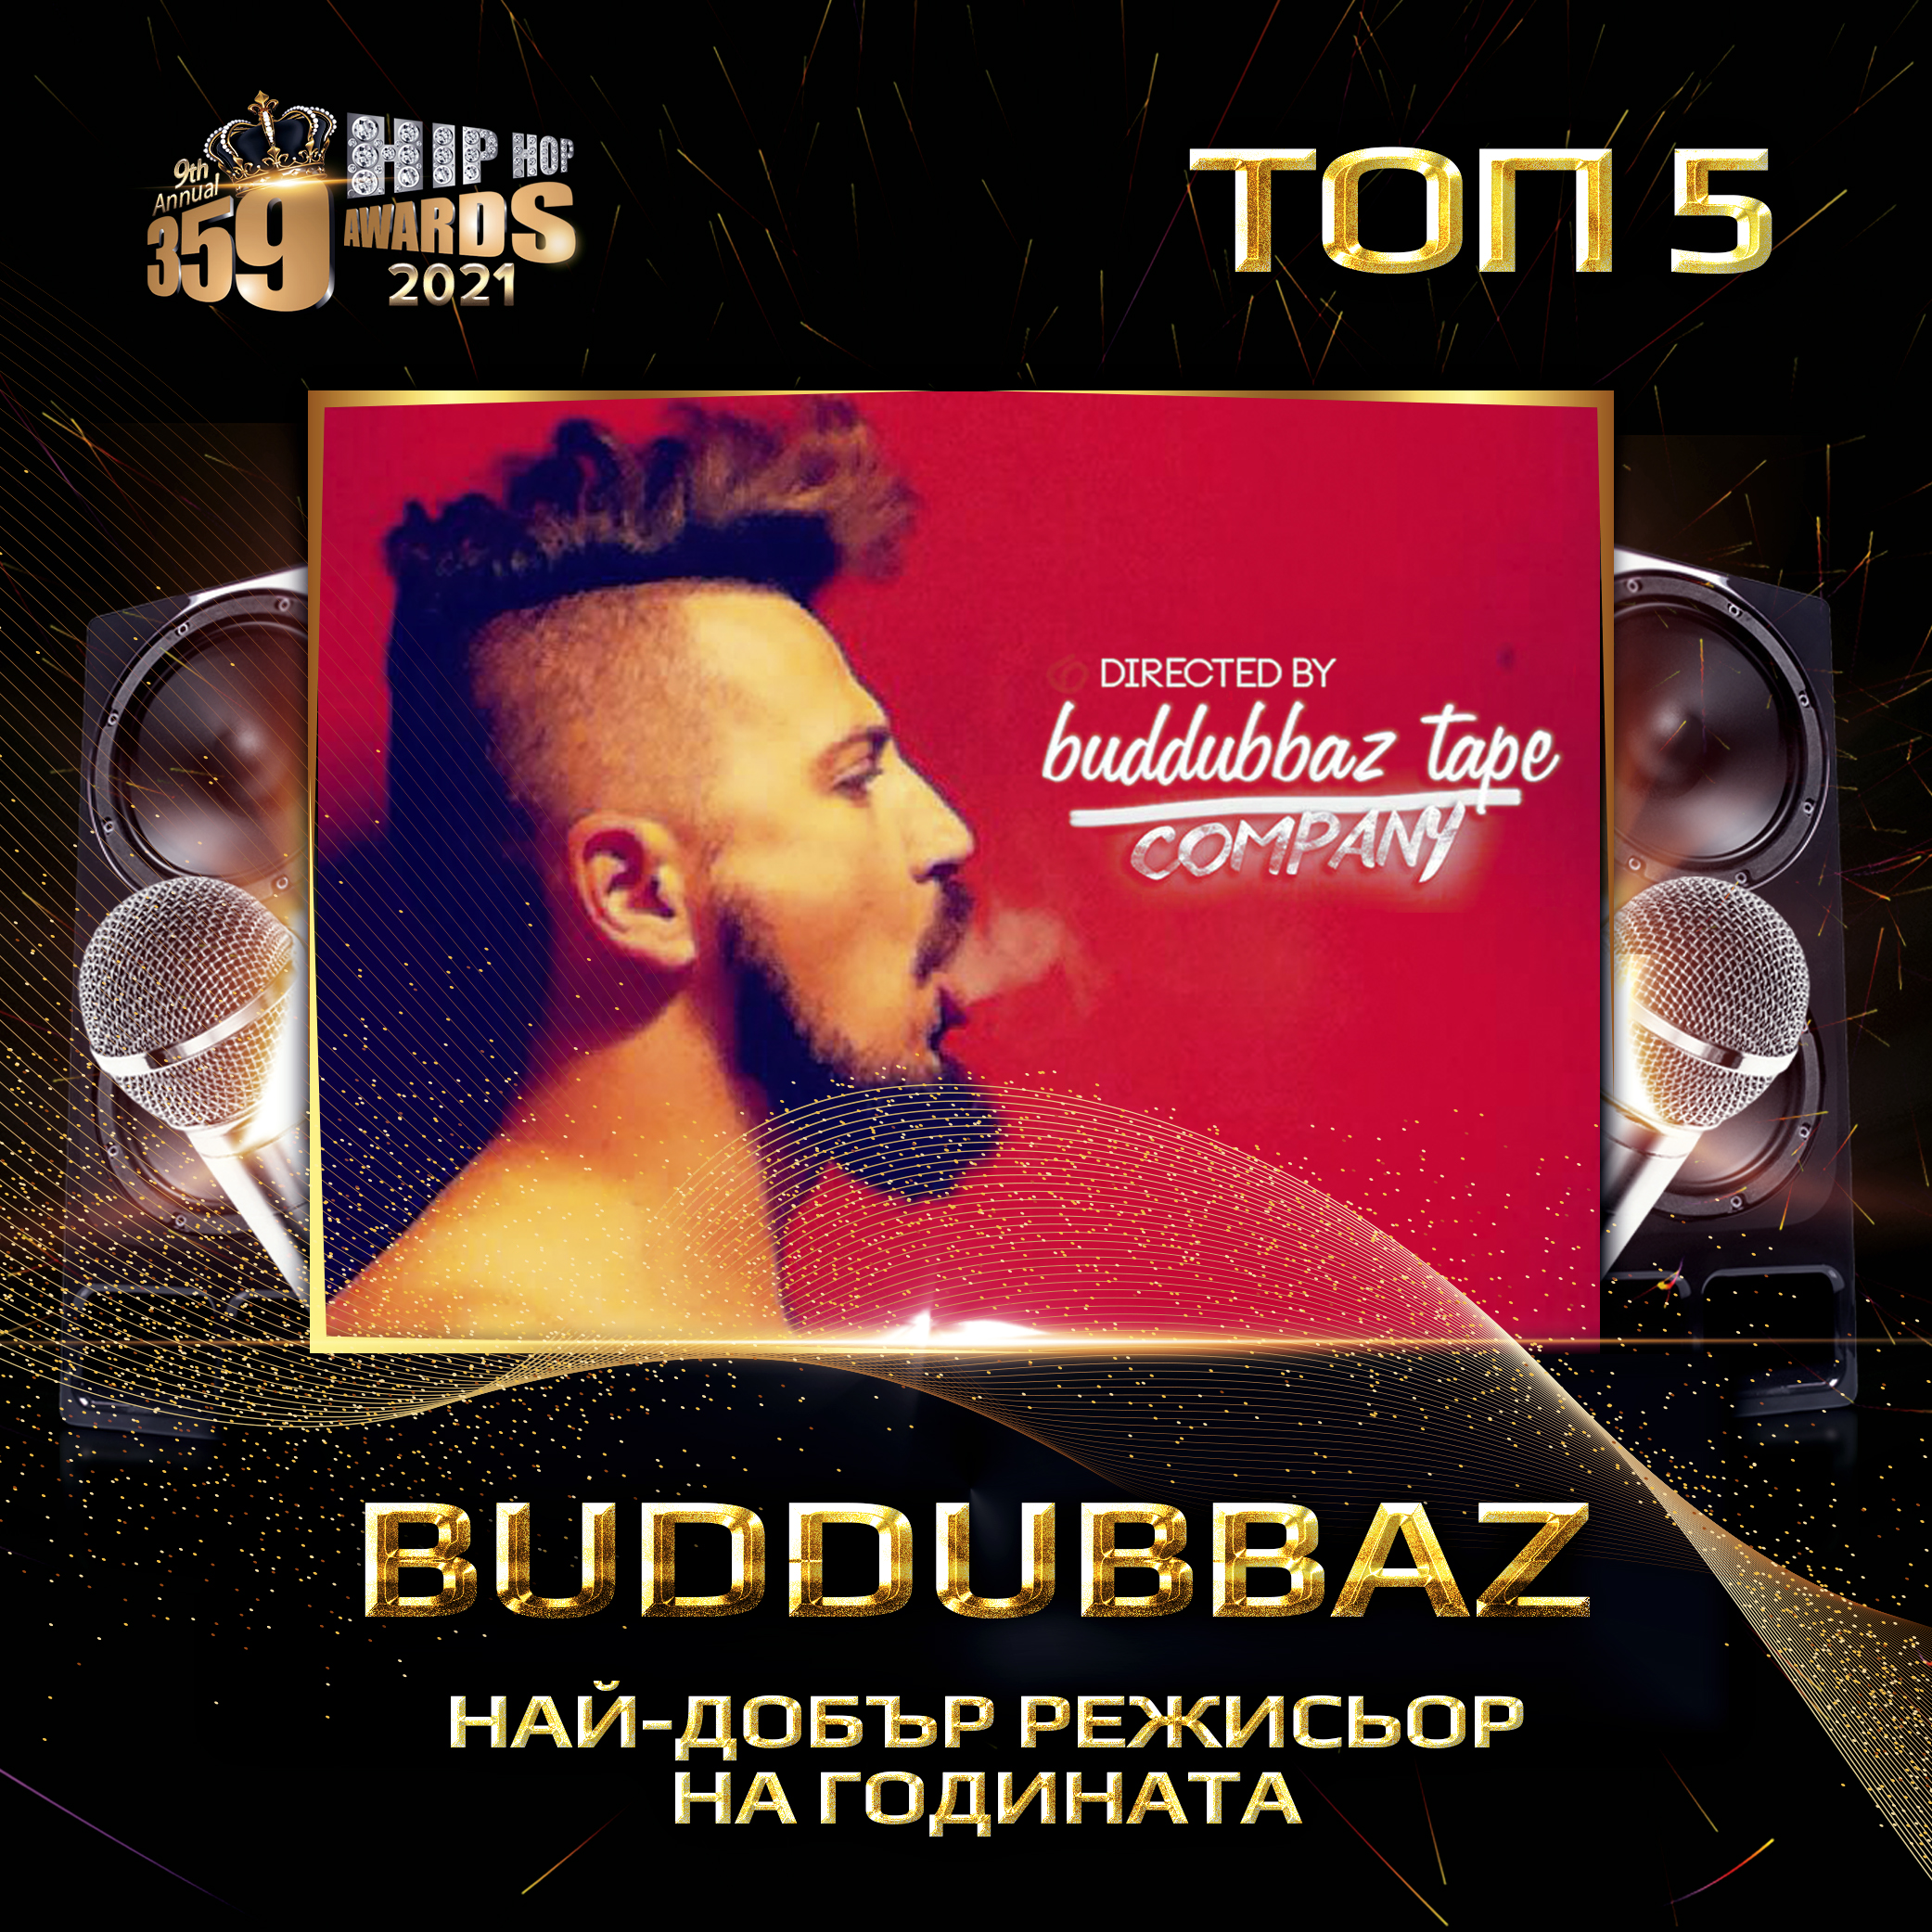 top 5  359 awards 2021 rejisior buddubbaz - Най-добър режисьор на годината 2020